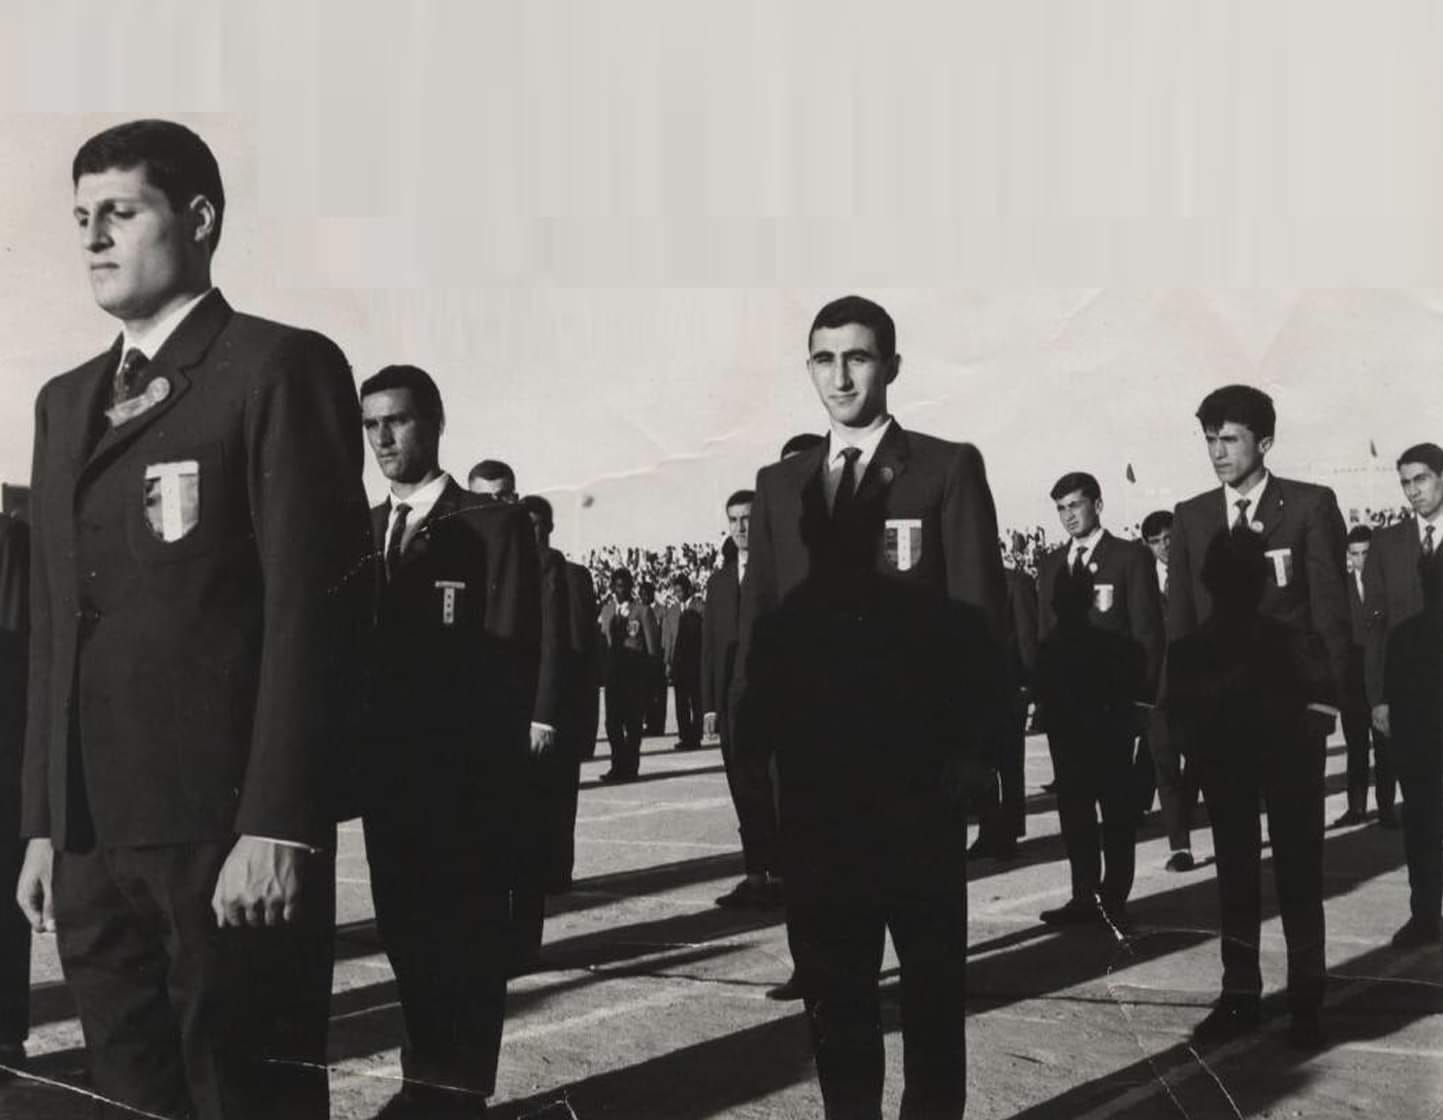 التاريخ السوري المعاصر - أعضاء الوفد الرياضي المدرسي السوري في الكويت 1963